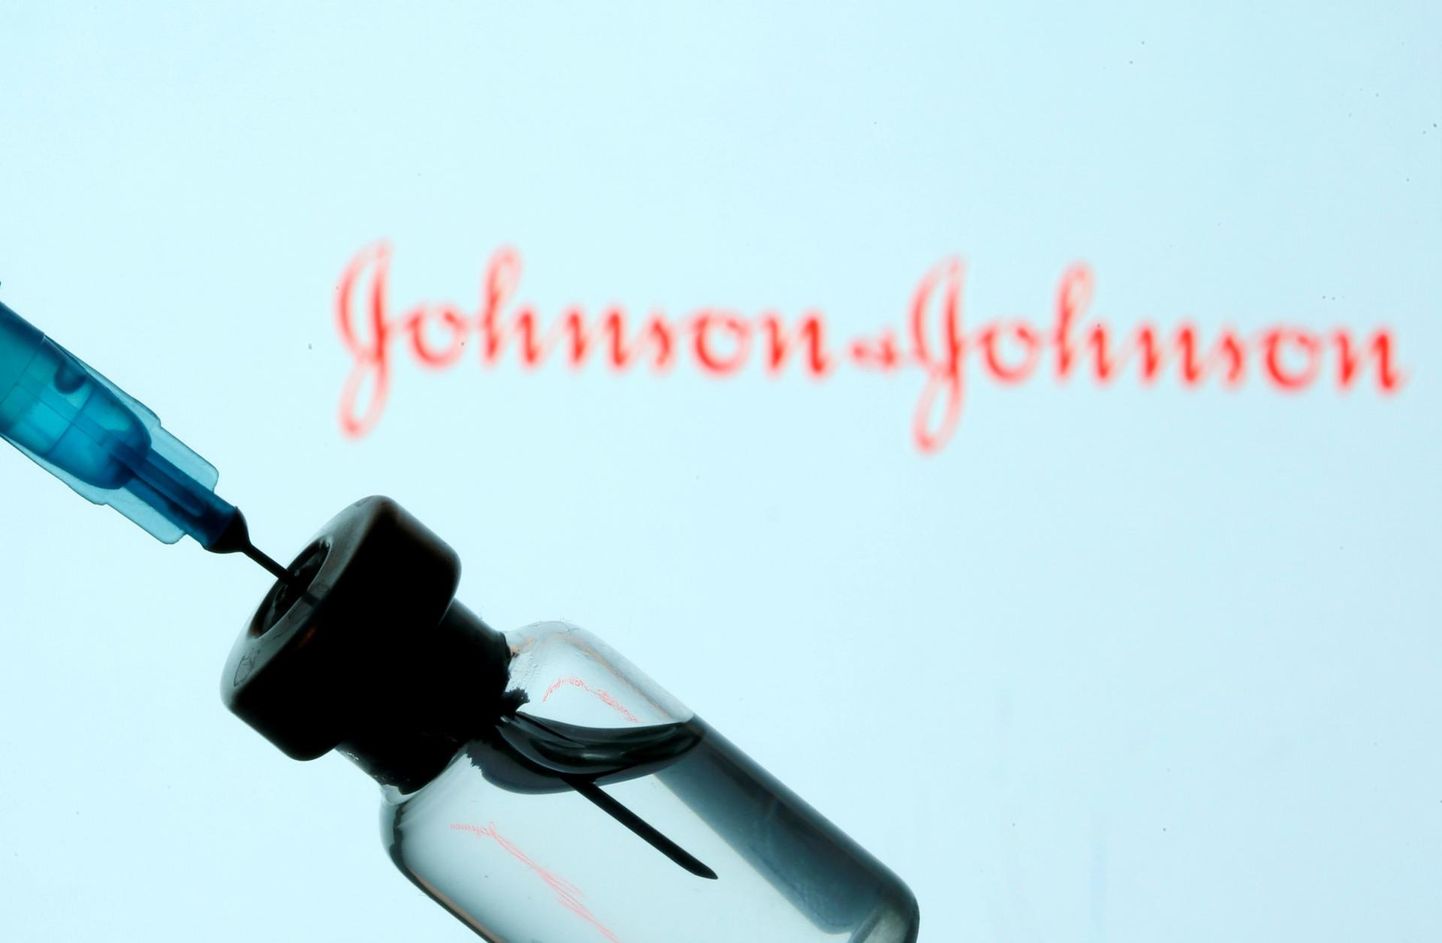 Johnson & Johnsoni vaktsiiniviaal.